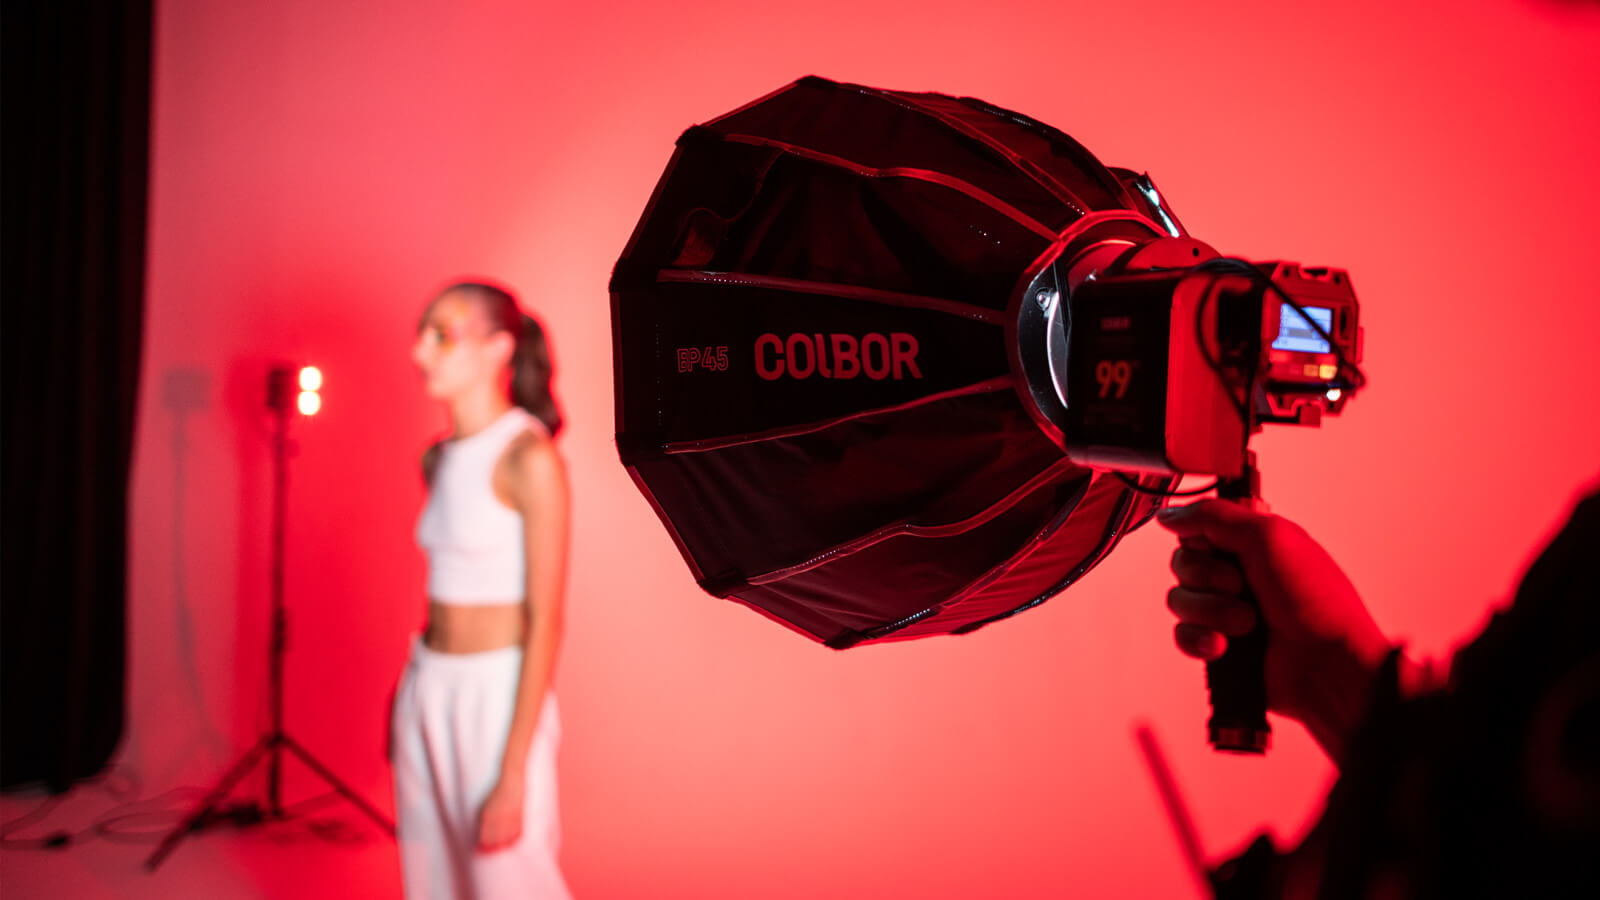 Use COLBOR BP45 softbox to soften lighting for short films